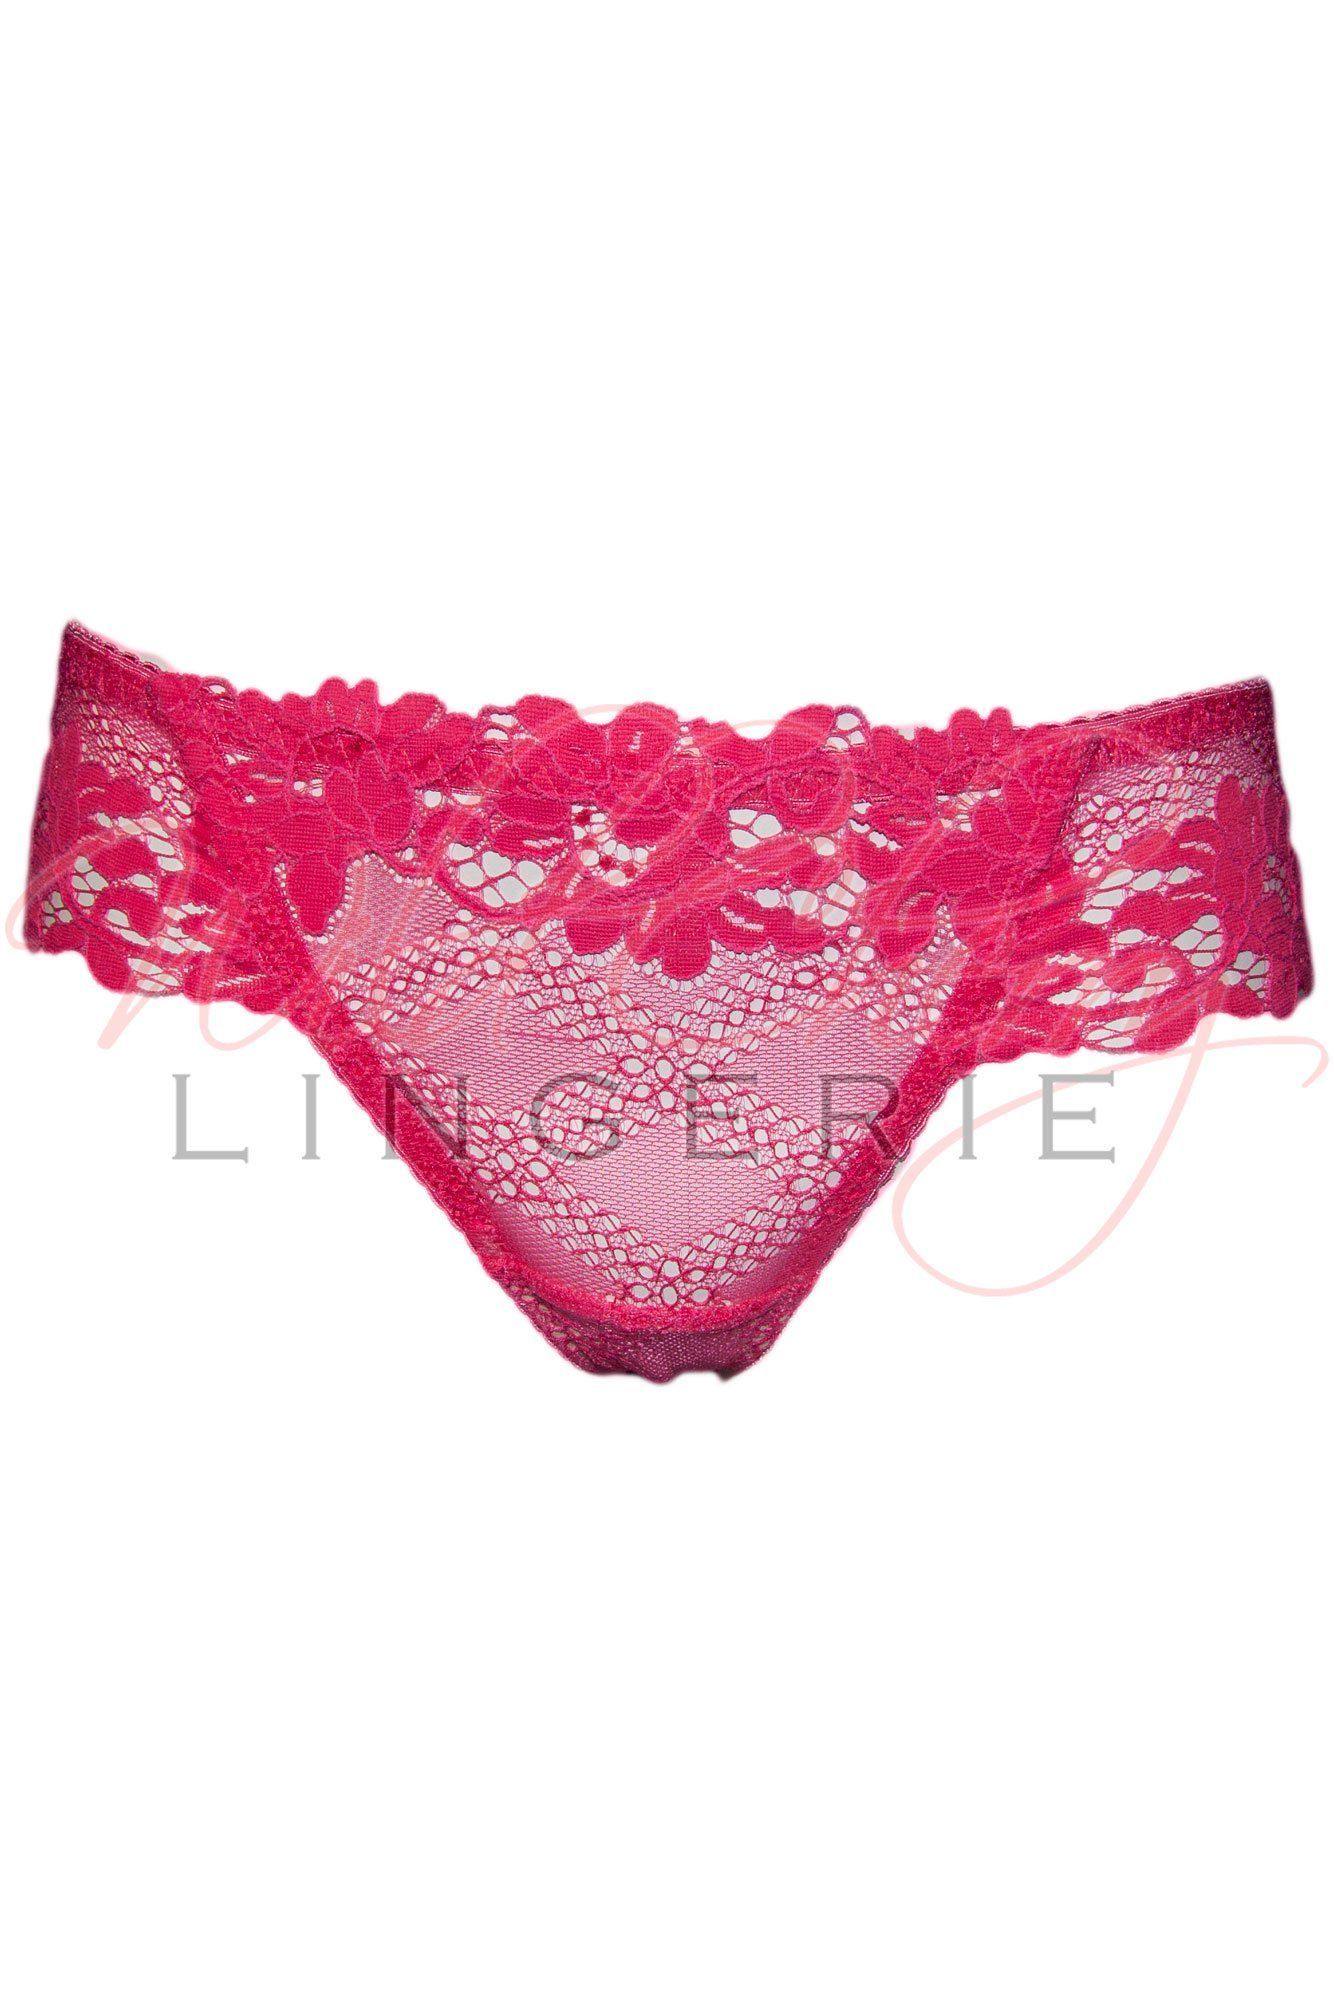 Daniella Pink Collection Thong Panty VIPA Lingerie, Panties, VIPA Lingerie - Wild Cherry Lingerie